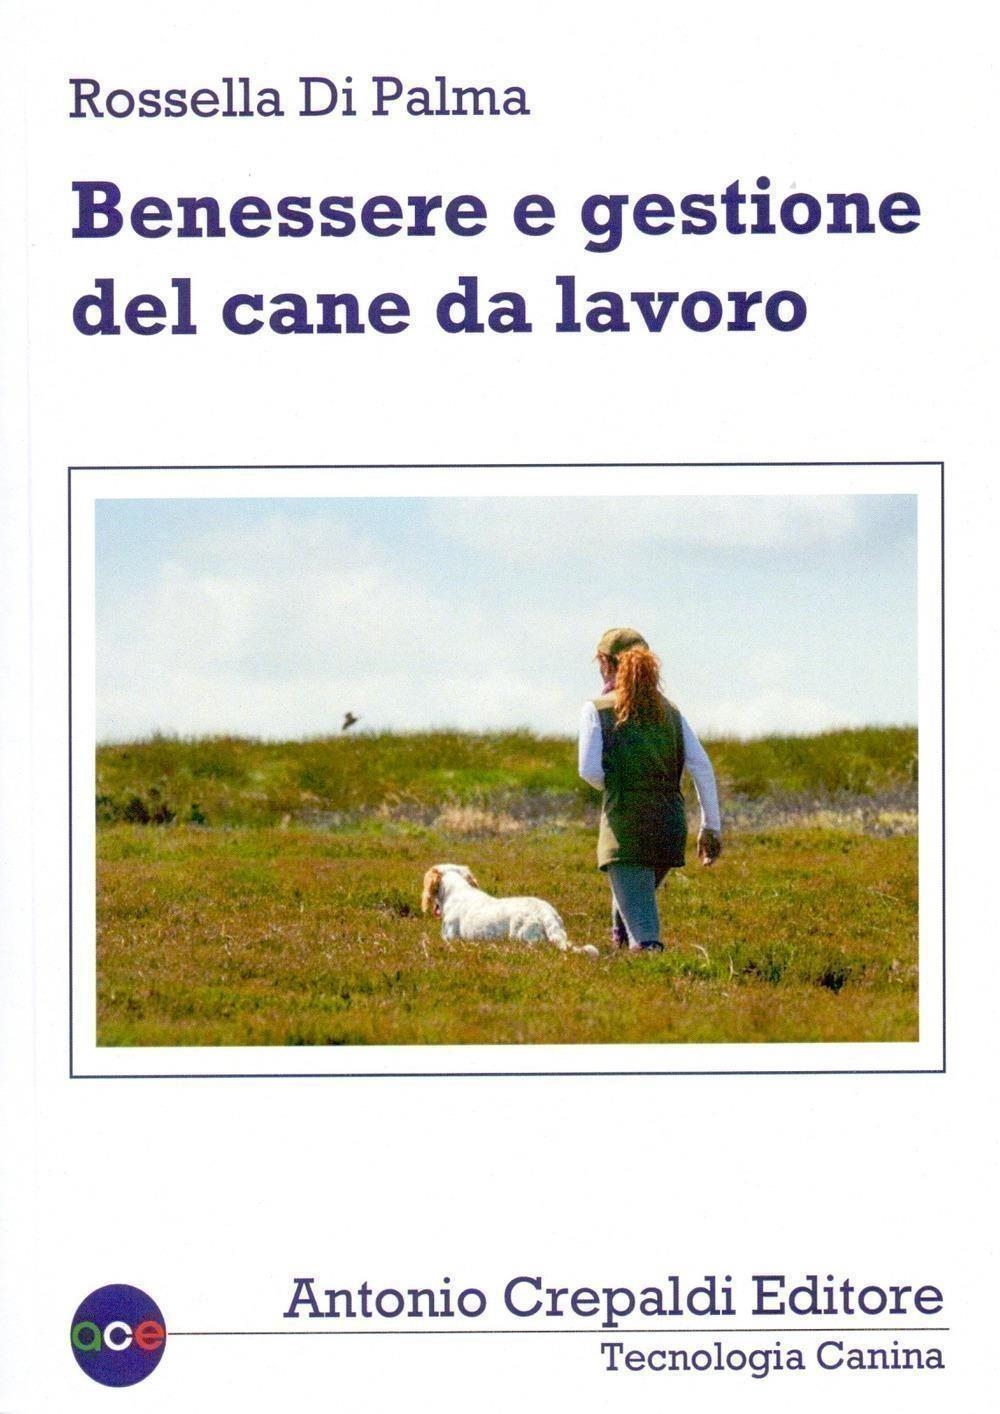 Libri Di Palma Rossella - Benessere E Gestione Del Cane Da Lavoro NUOVO SIGILLATO, EDIZIONE DEL 10/09/2020 SUBITO DISPONIBILE